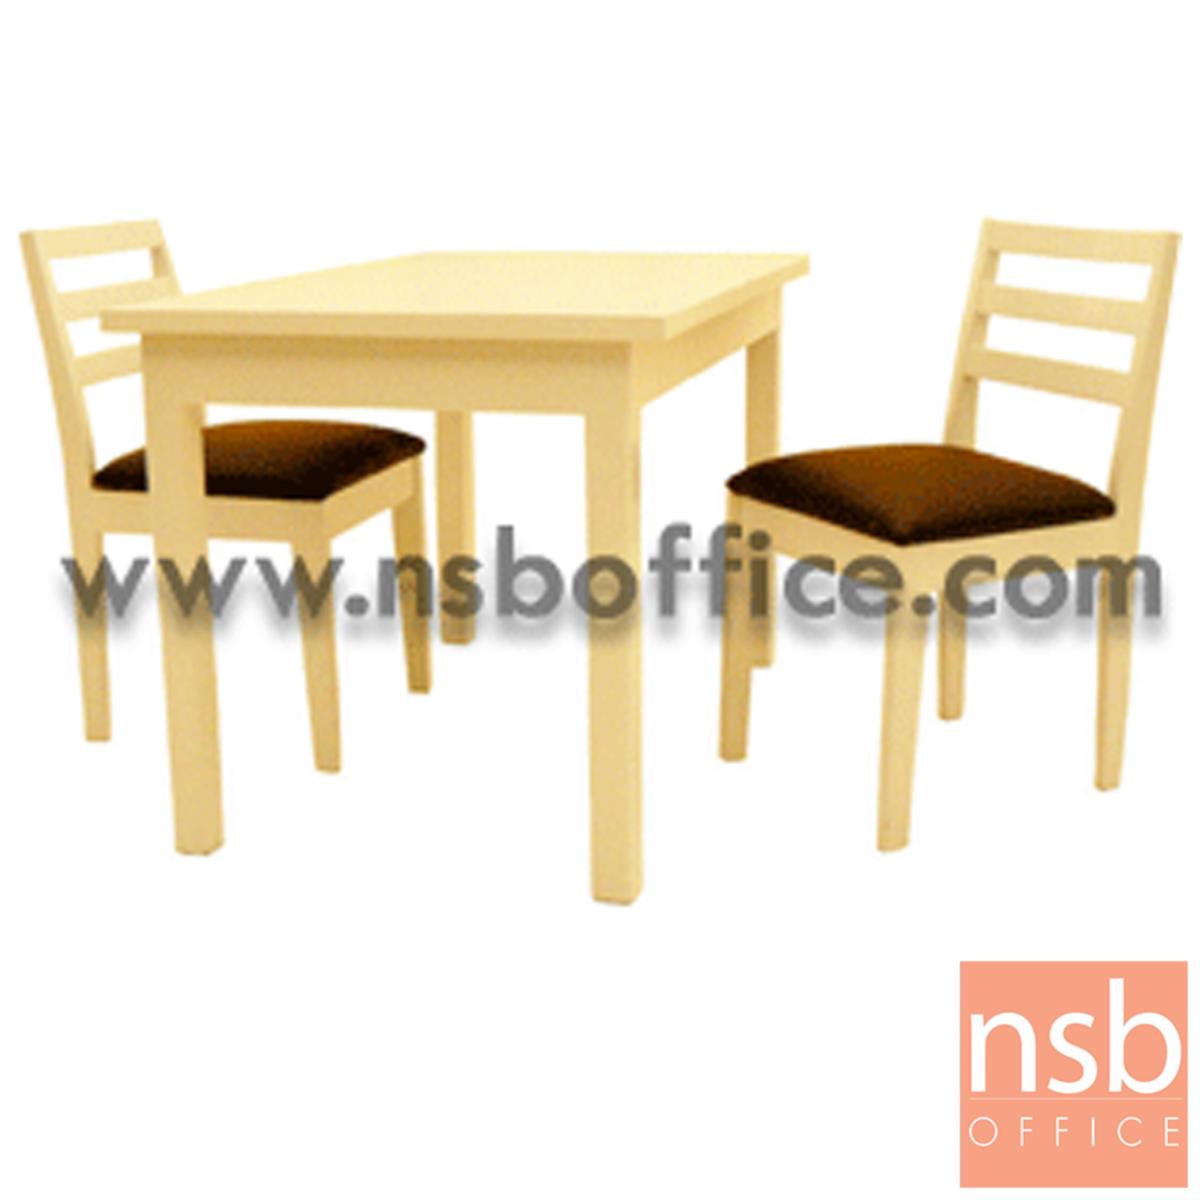 G14A001:ชุดโต๊ะรับประทานอาหารหน้าไม้ยางพารา 2 ที่นั่ง  ขนาด 75W cm.  พร้อมเก้าอี้ ผลิตเฉพาะสีขาวล้วน